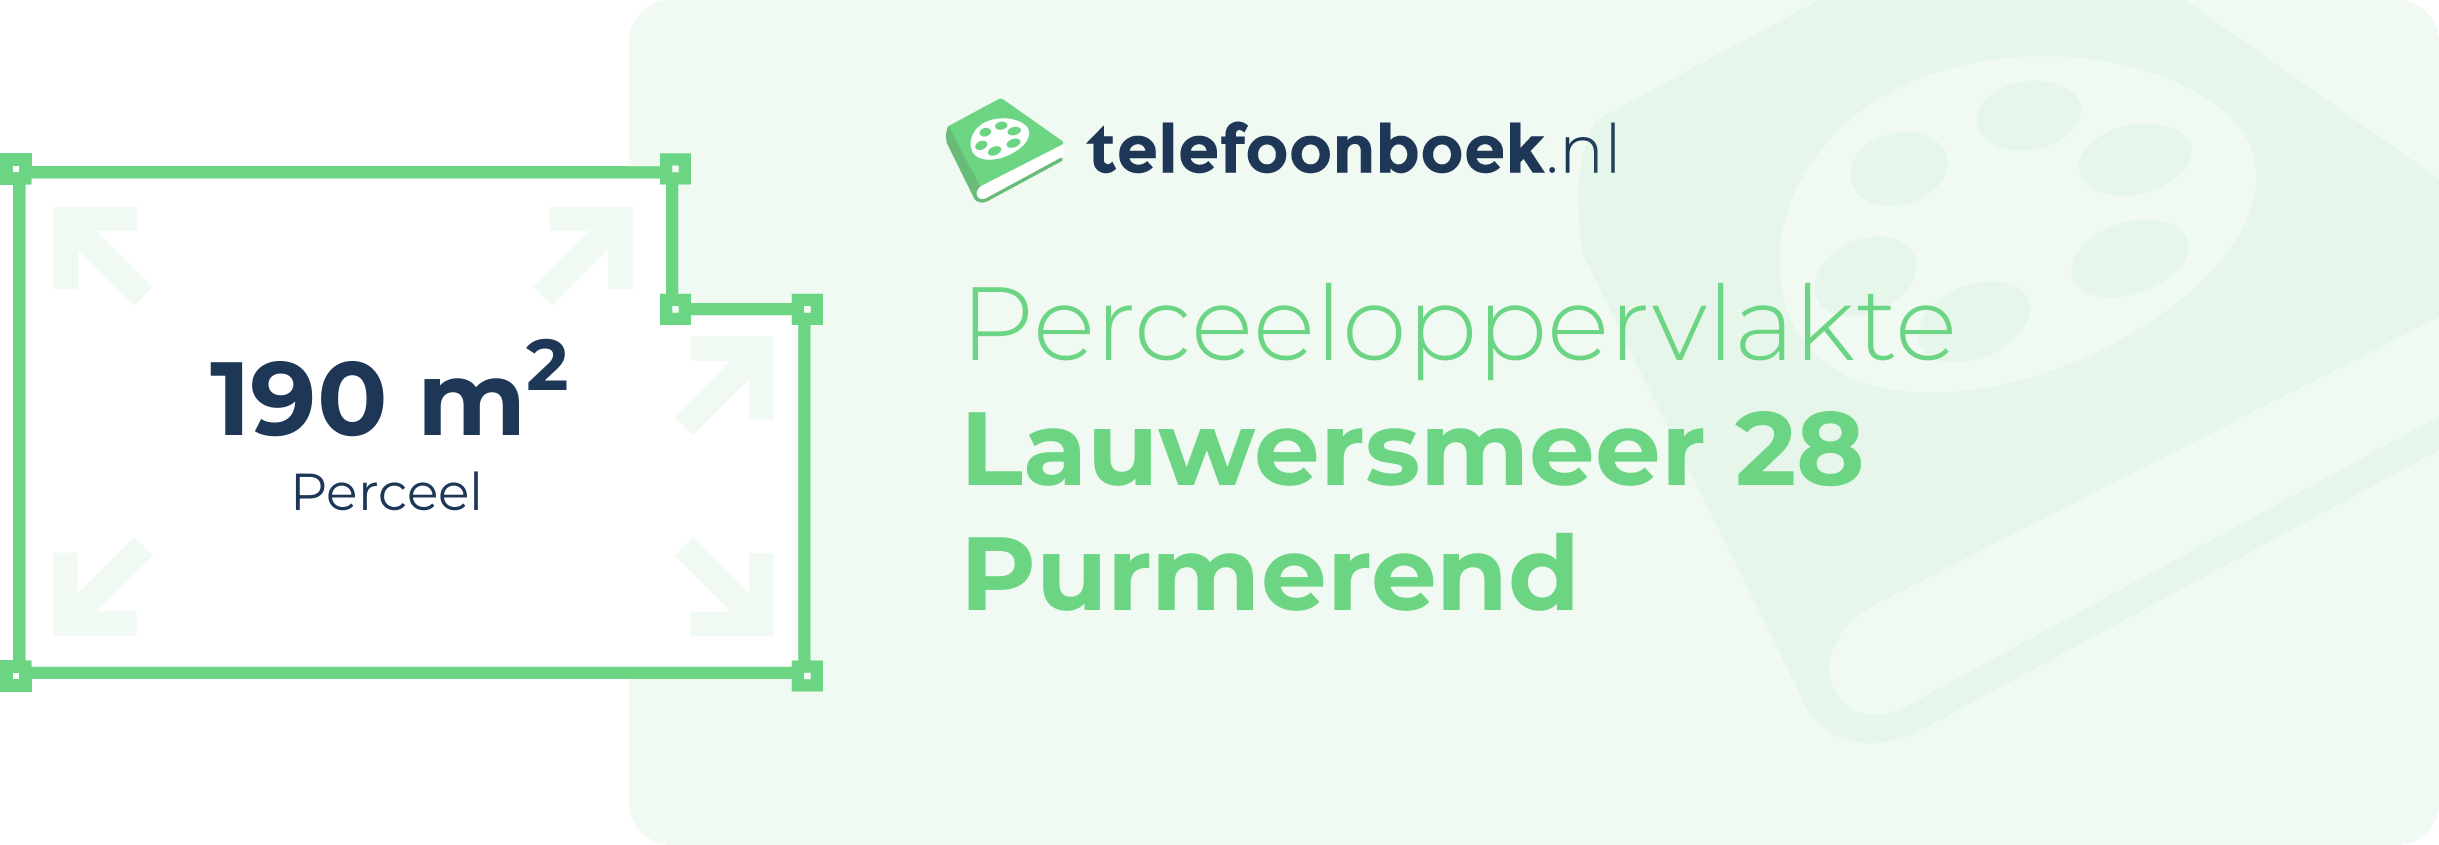 Perceeloppervlakte Lauwersmeer 28 Purmerend